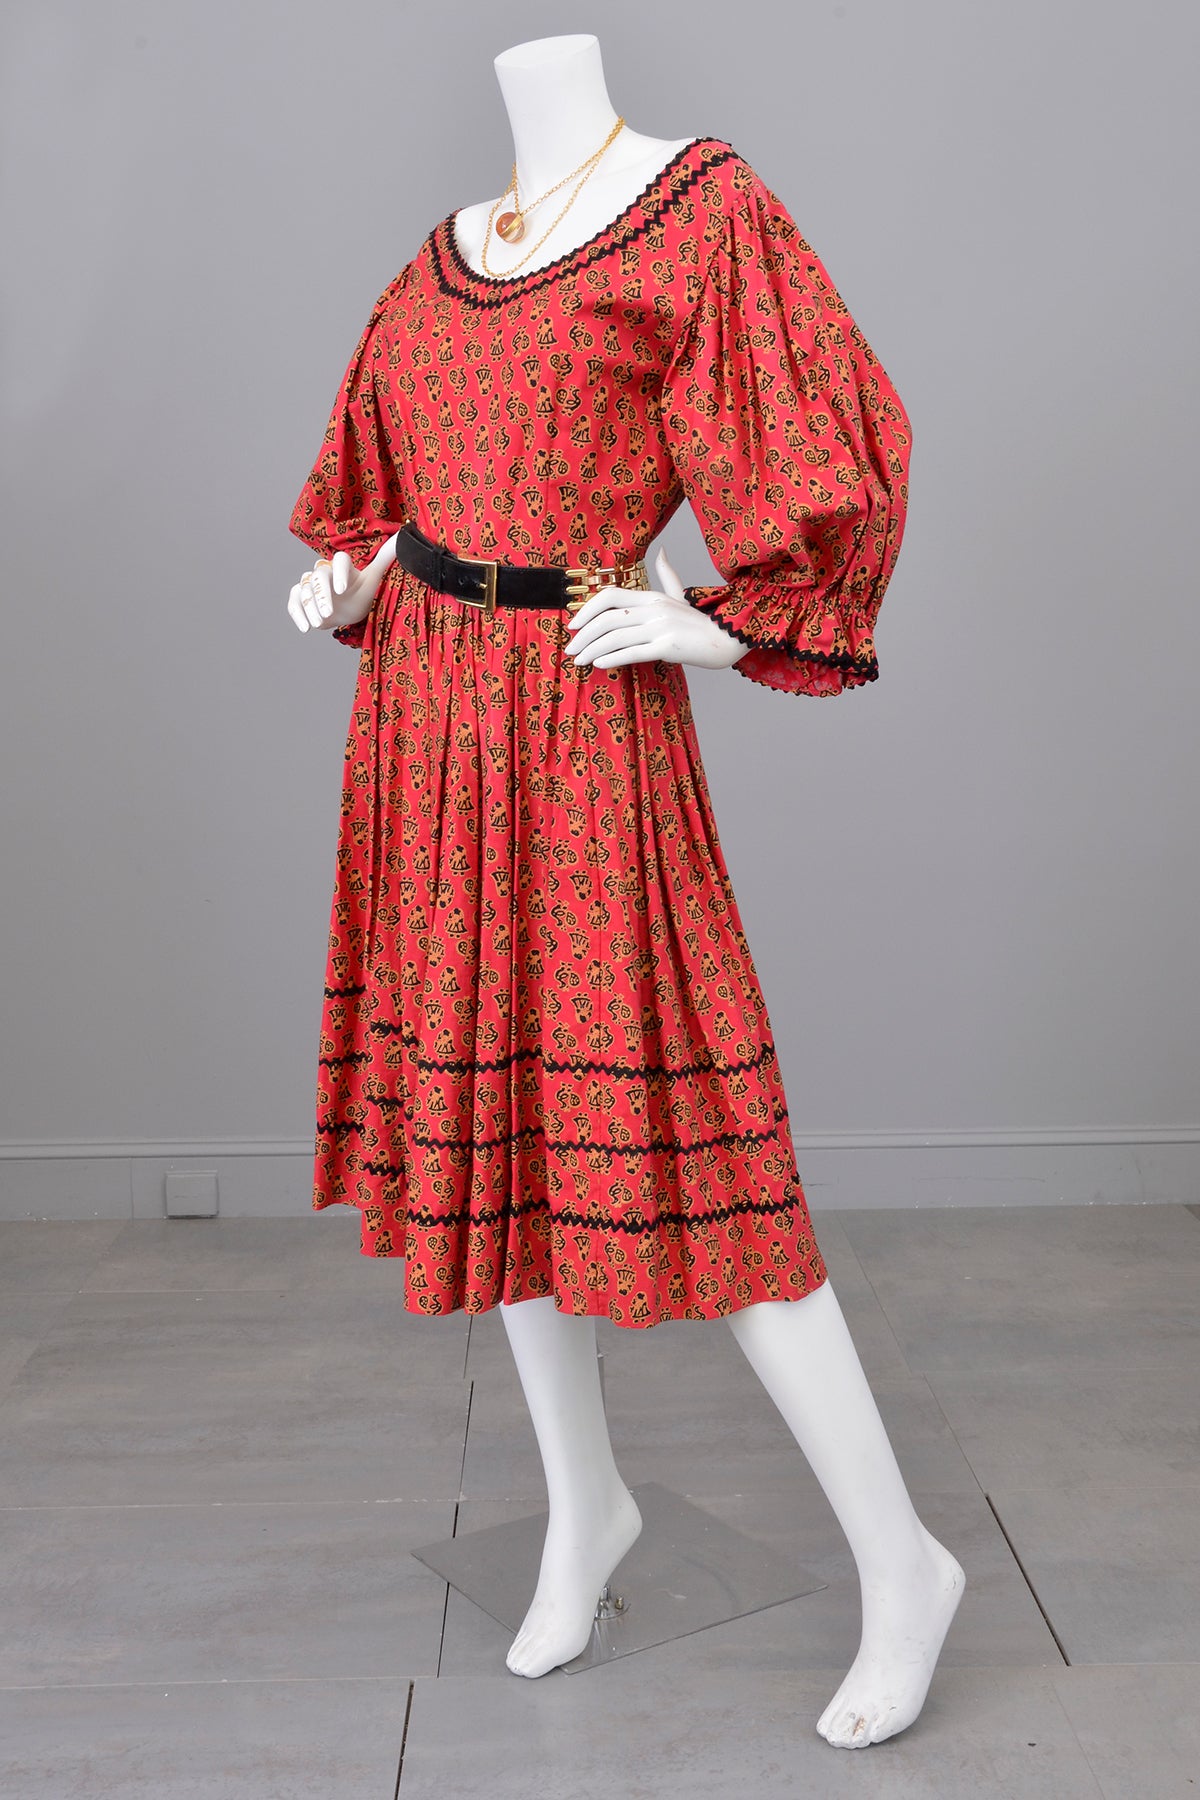 1950s Folklore Peasant Dress with Huge Poet Sleeves and Figural Novelty Print | Vintage Festival Folk Dress